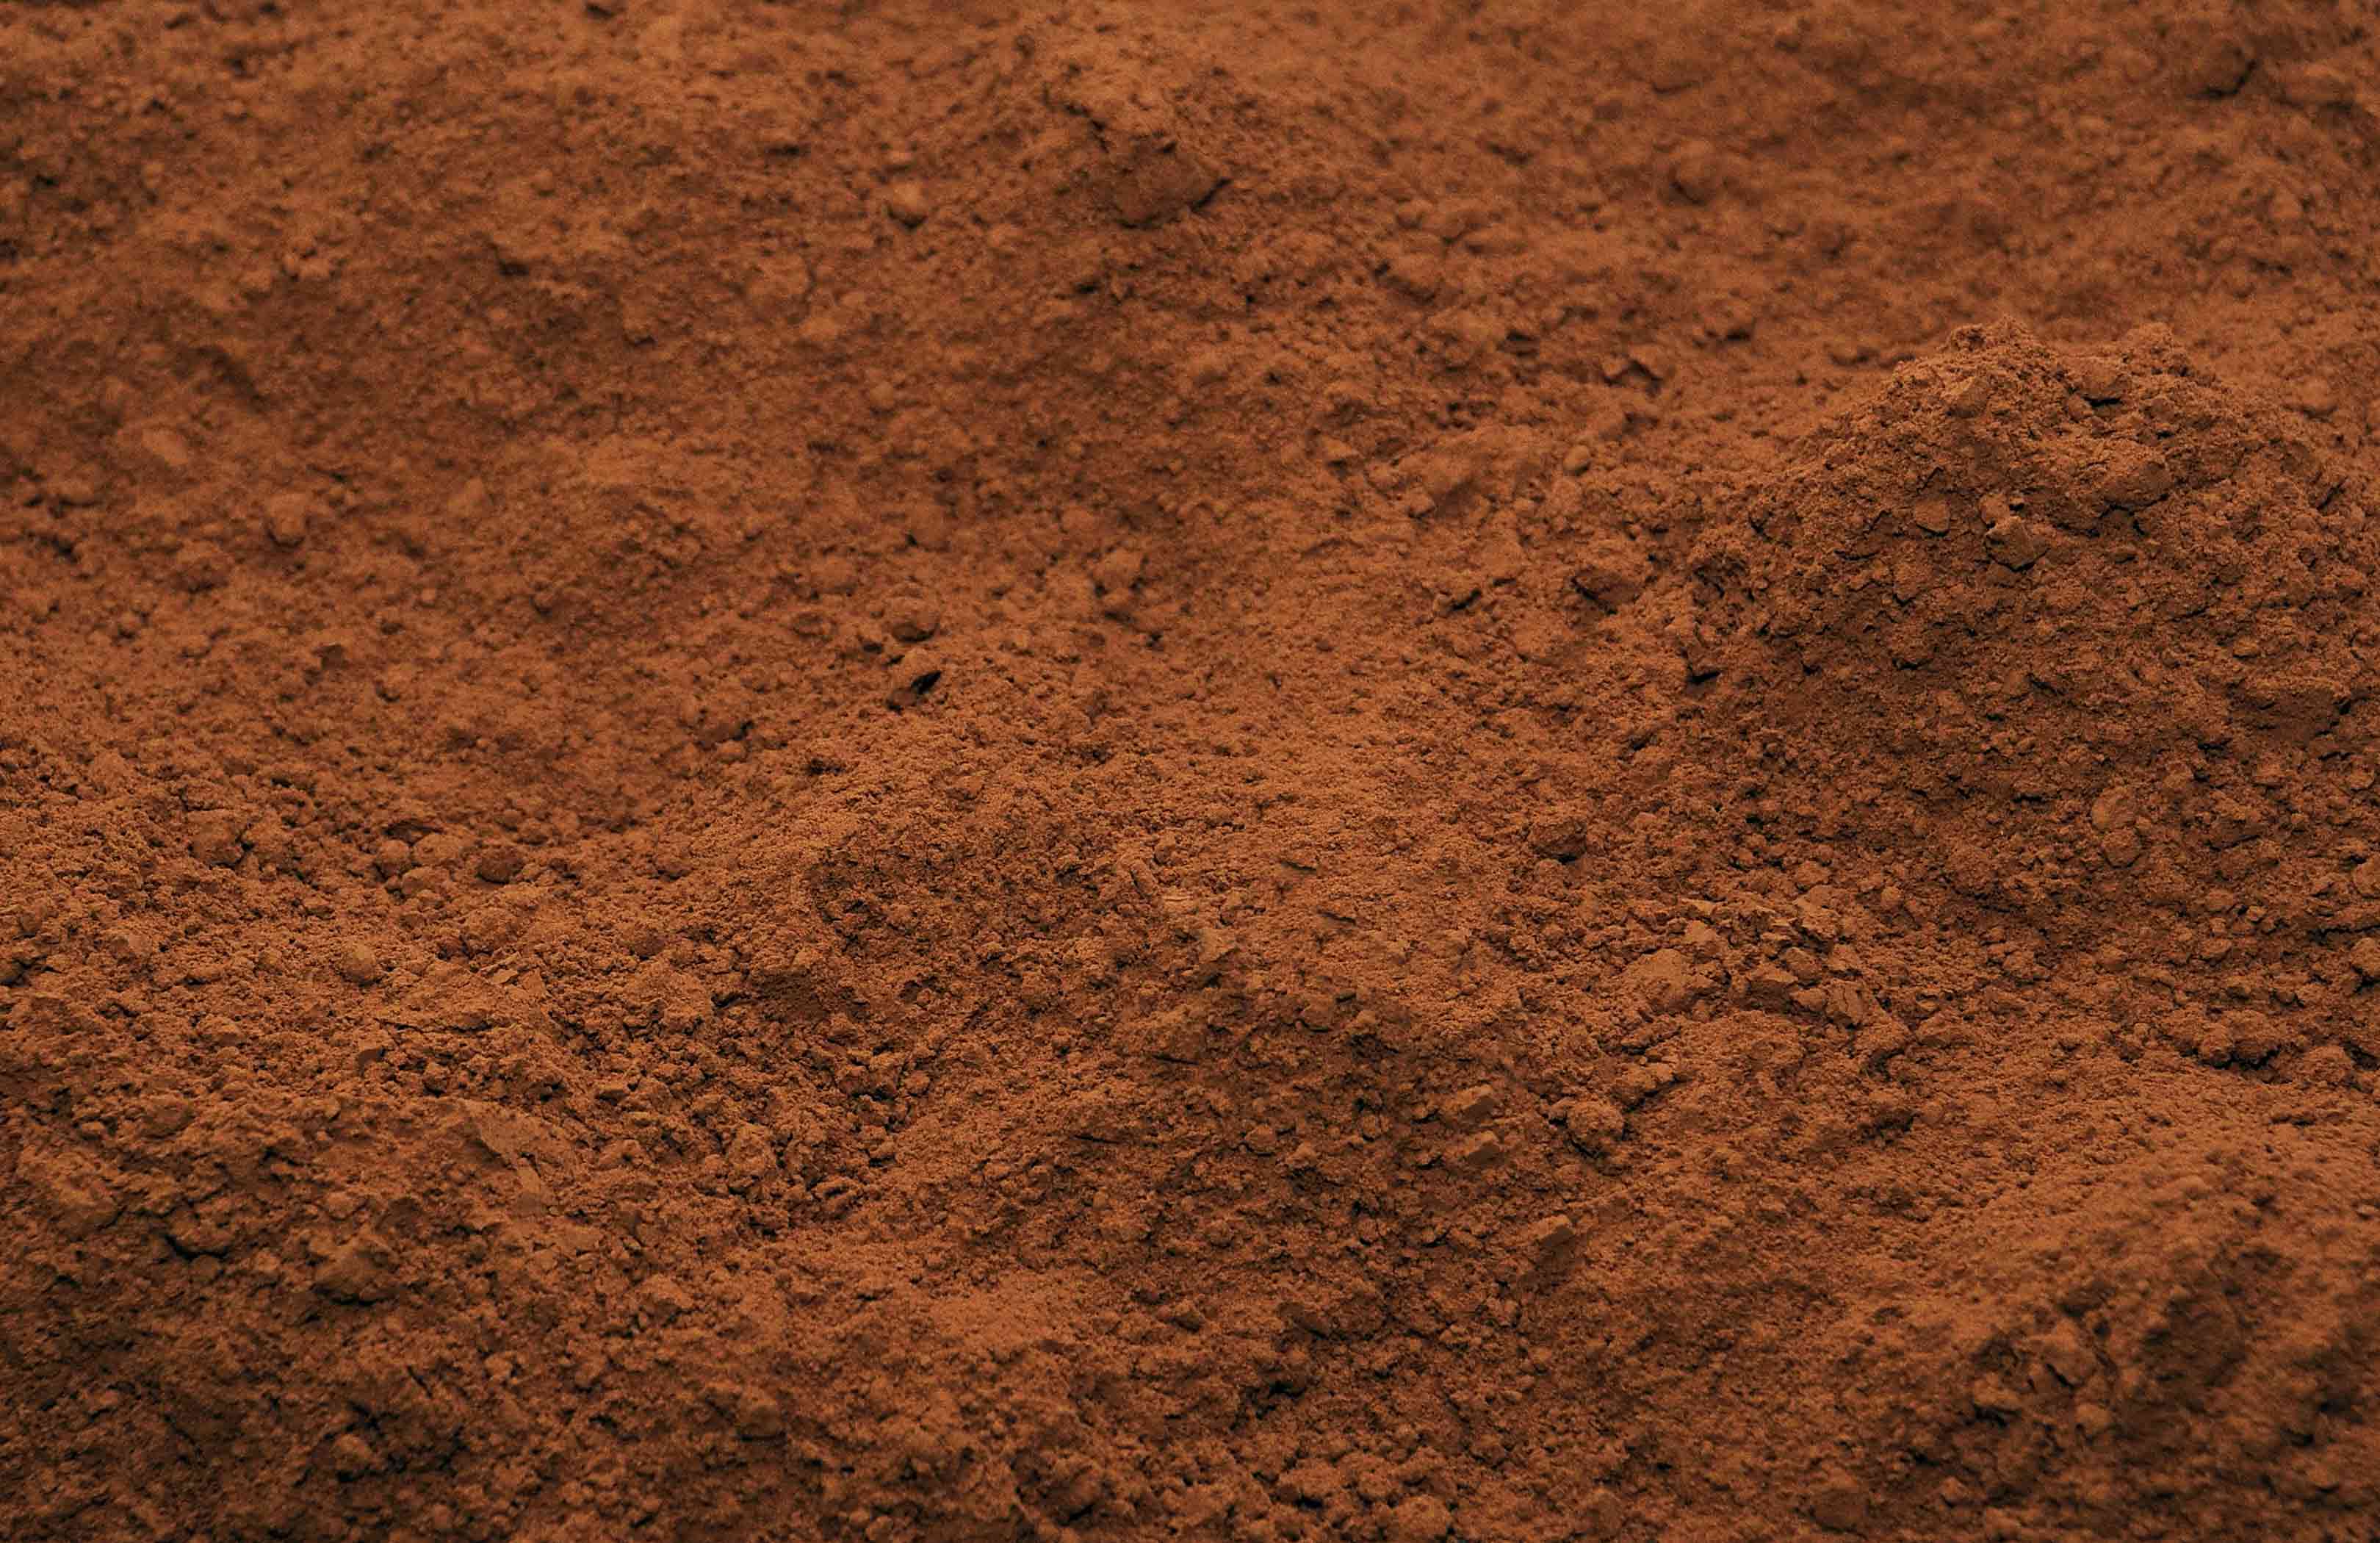 Dry red soil